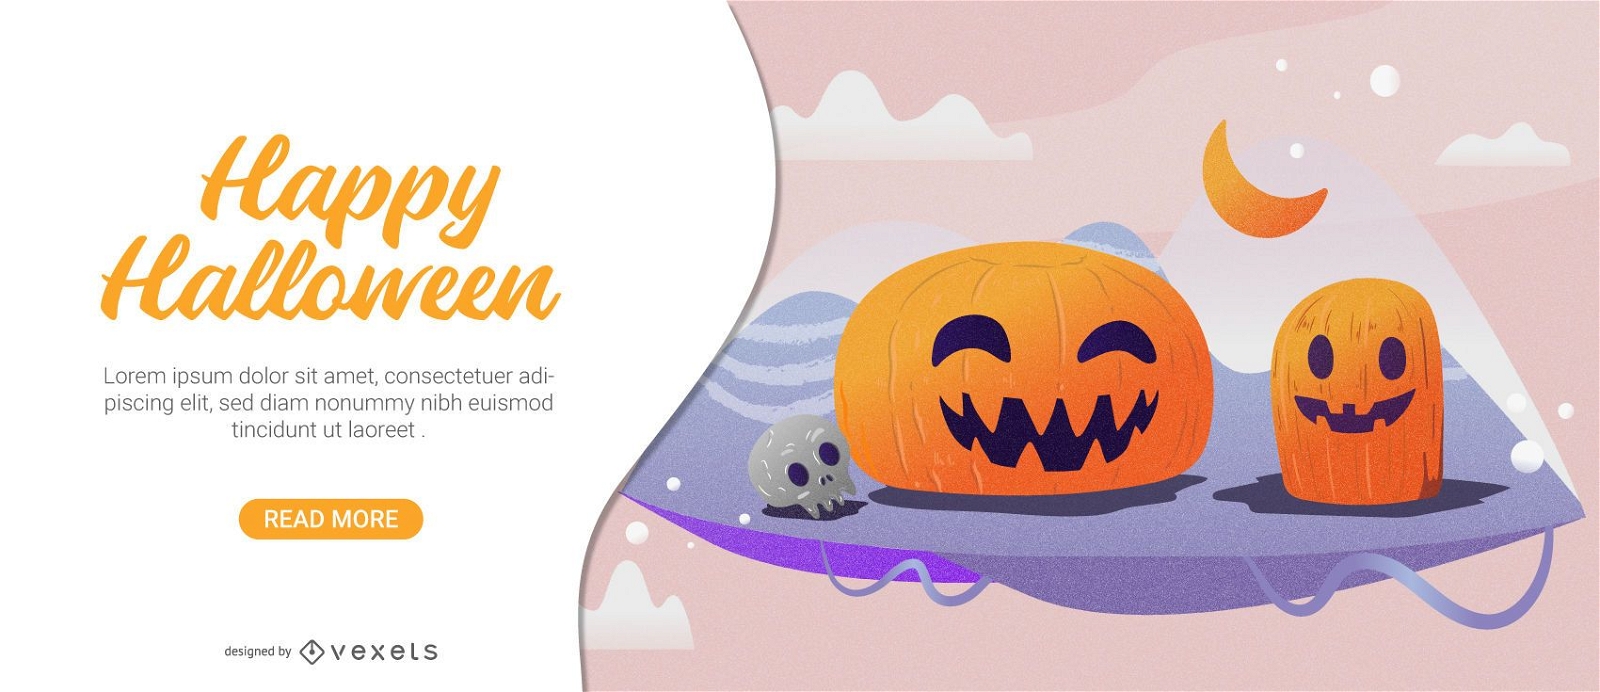 Cute pumpkins halloween card